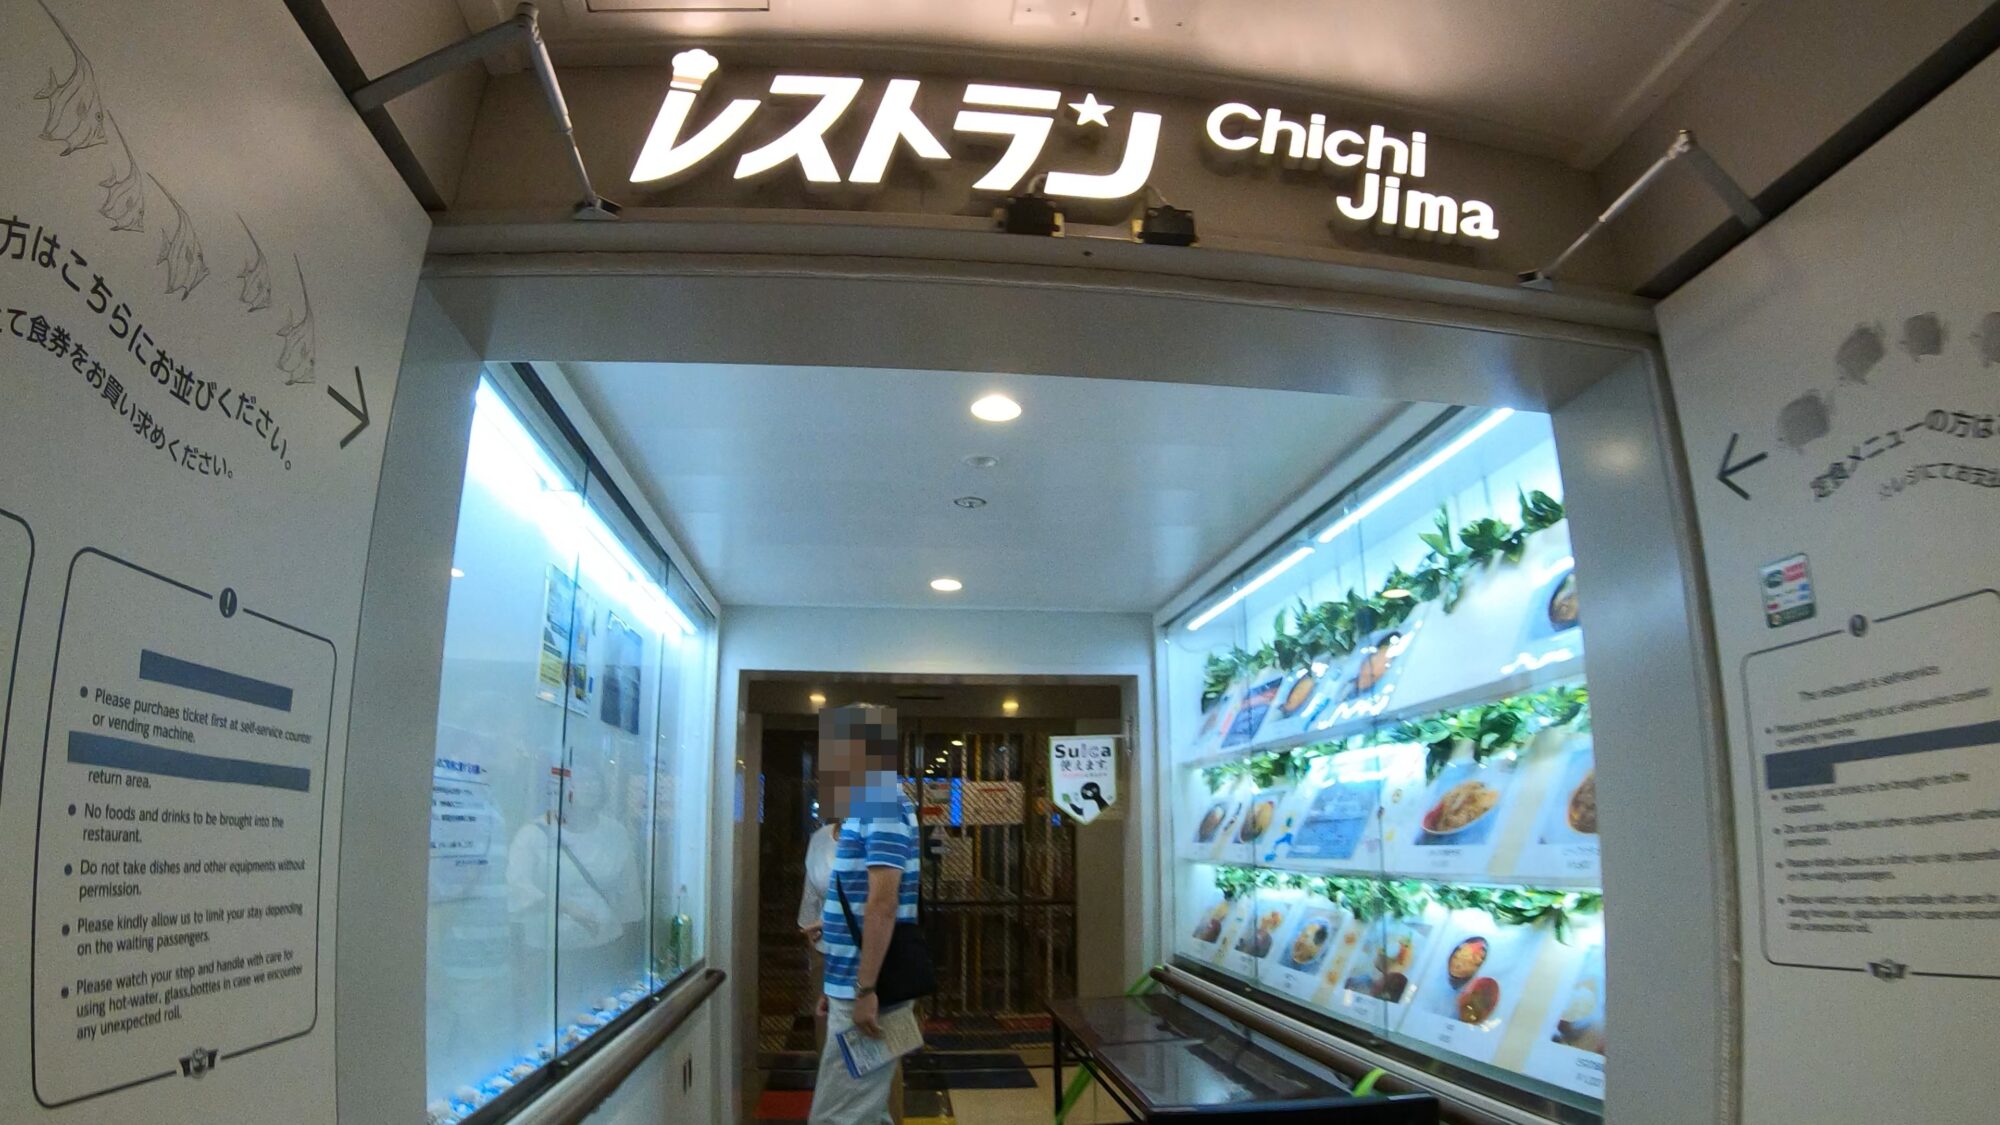 おがさわら丸 船内レストラン Chichi-jima 入口